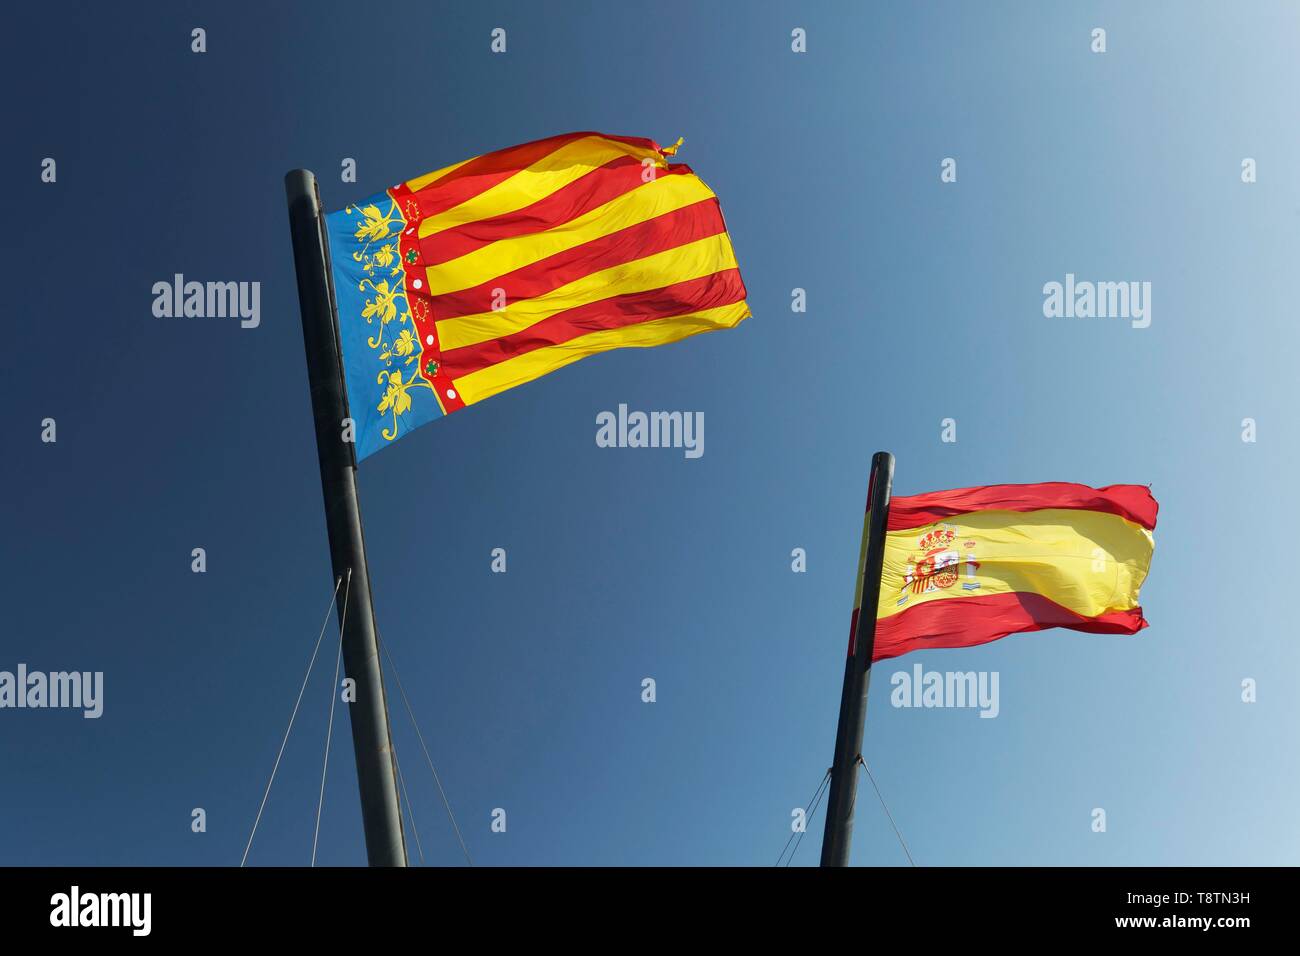 Zwei spanische Flaggen im Wind vor blauem Himmel, Flagge Valencia Flagge Königreich Spanien, Valencia, Spanien Stockfoto